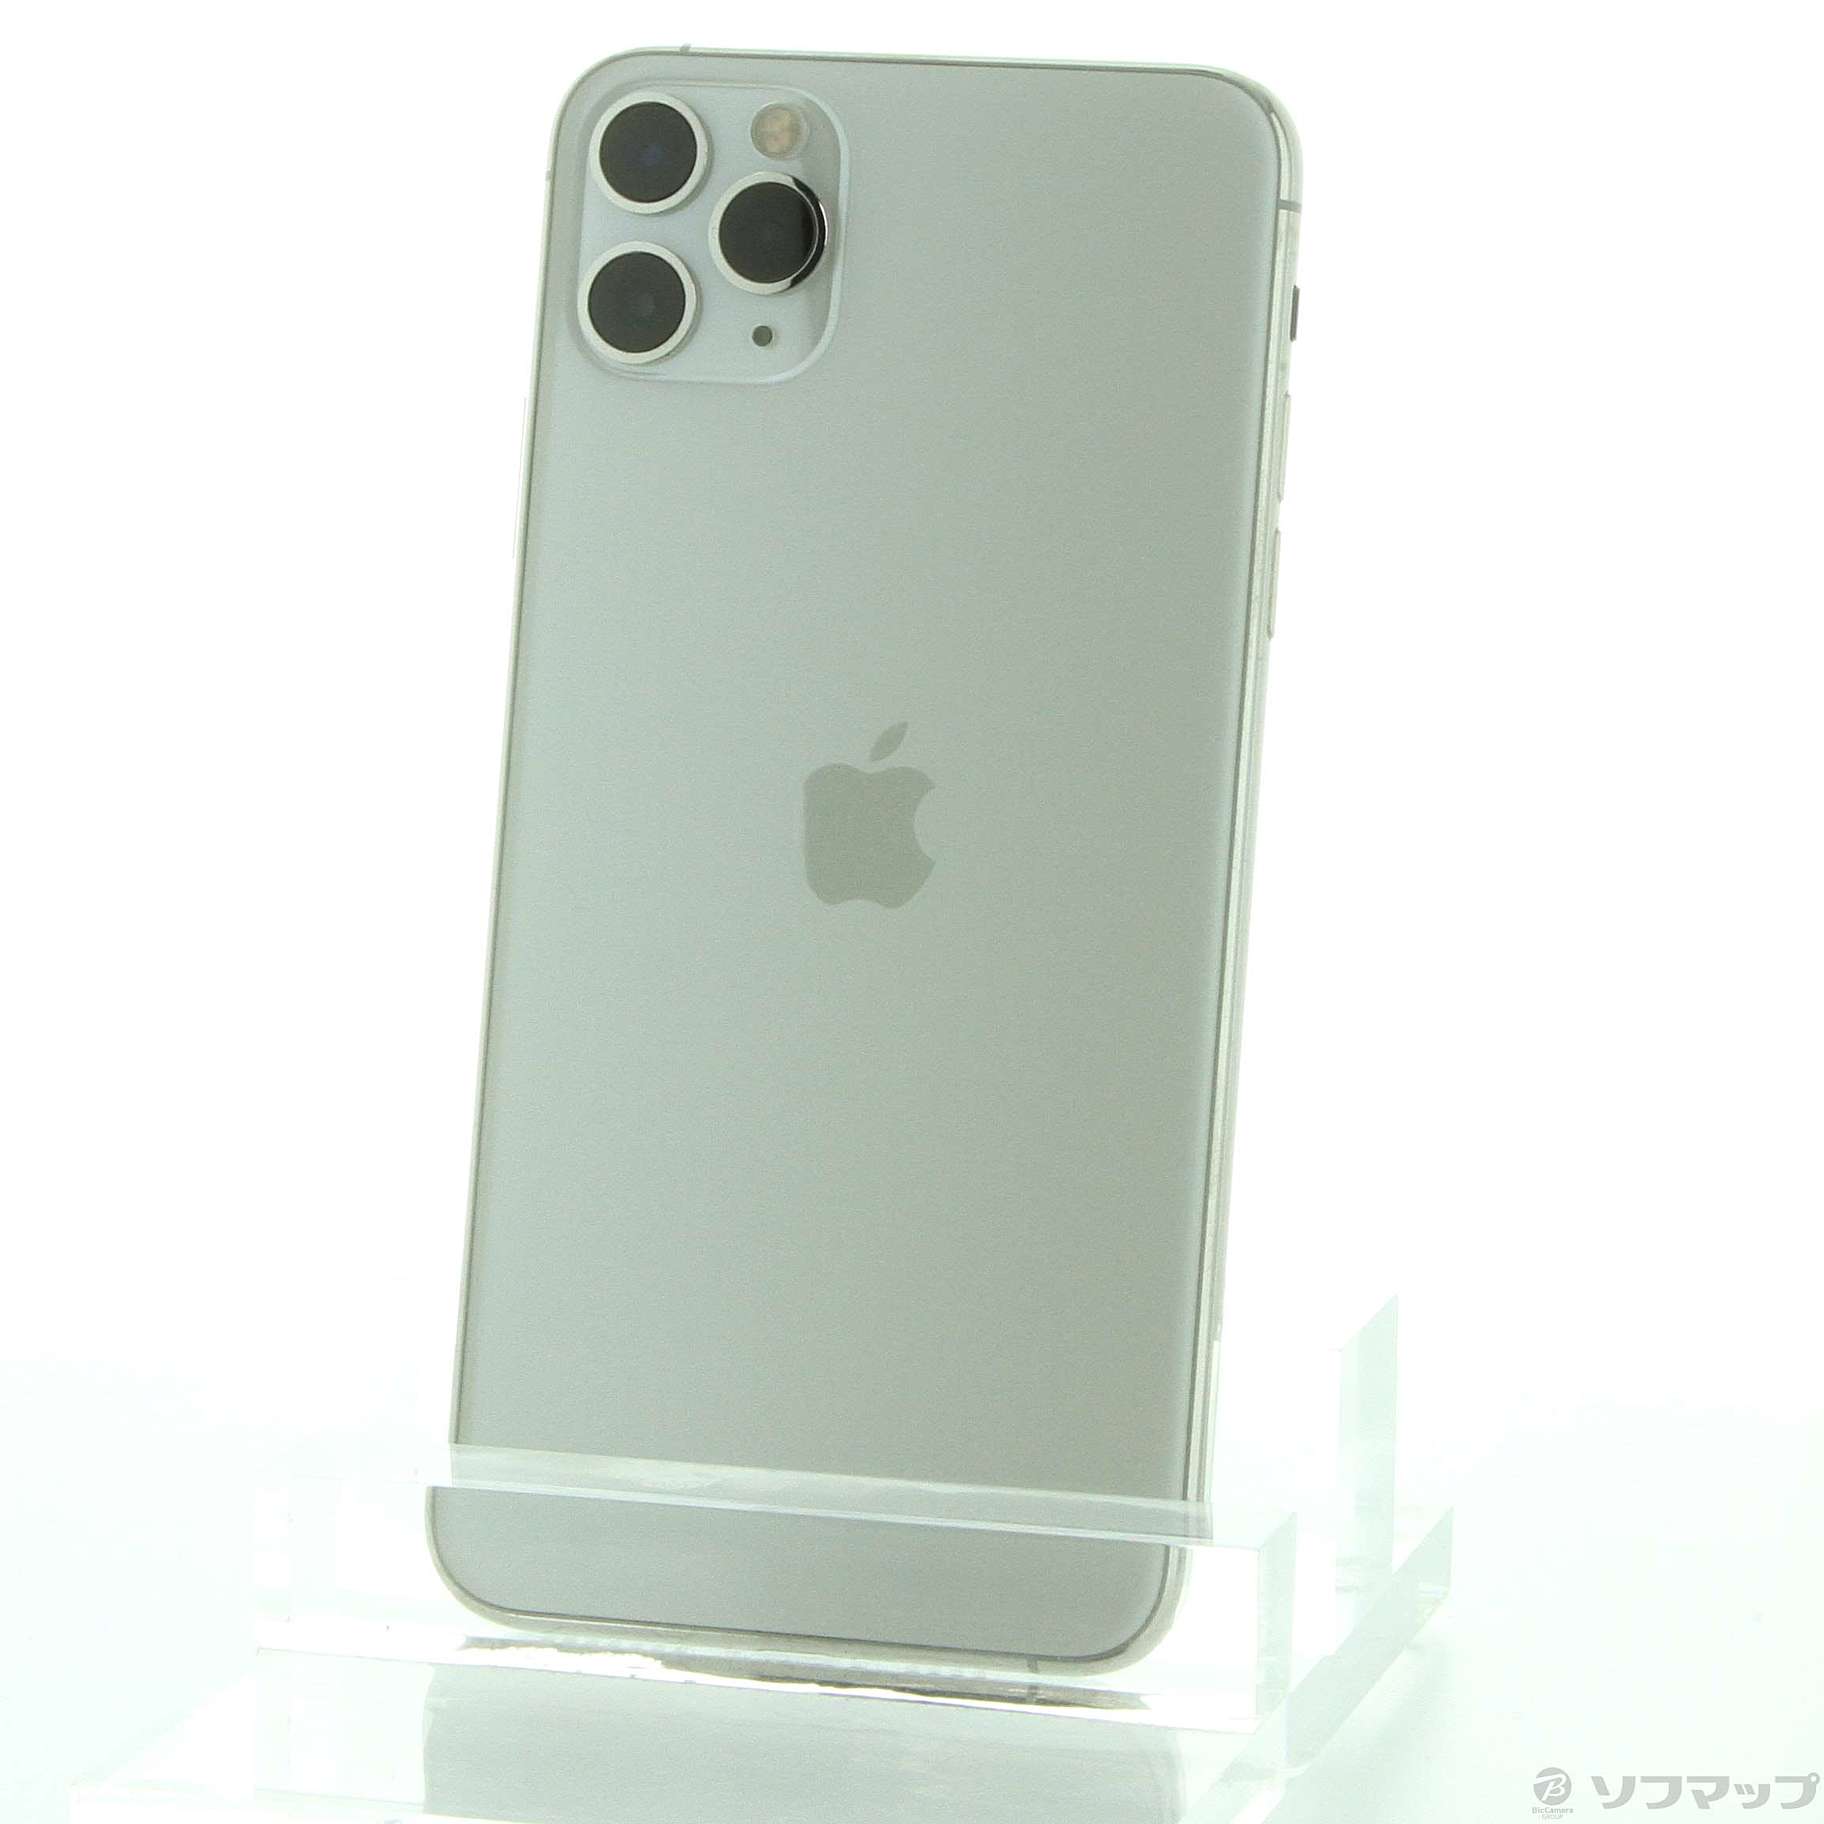 機種名iPhone11PiPhone 11 Pro Max シルバー 256 GB Softbank